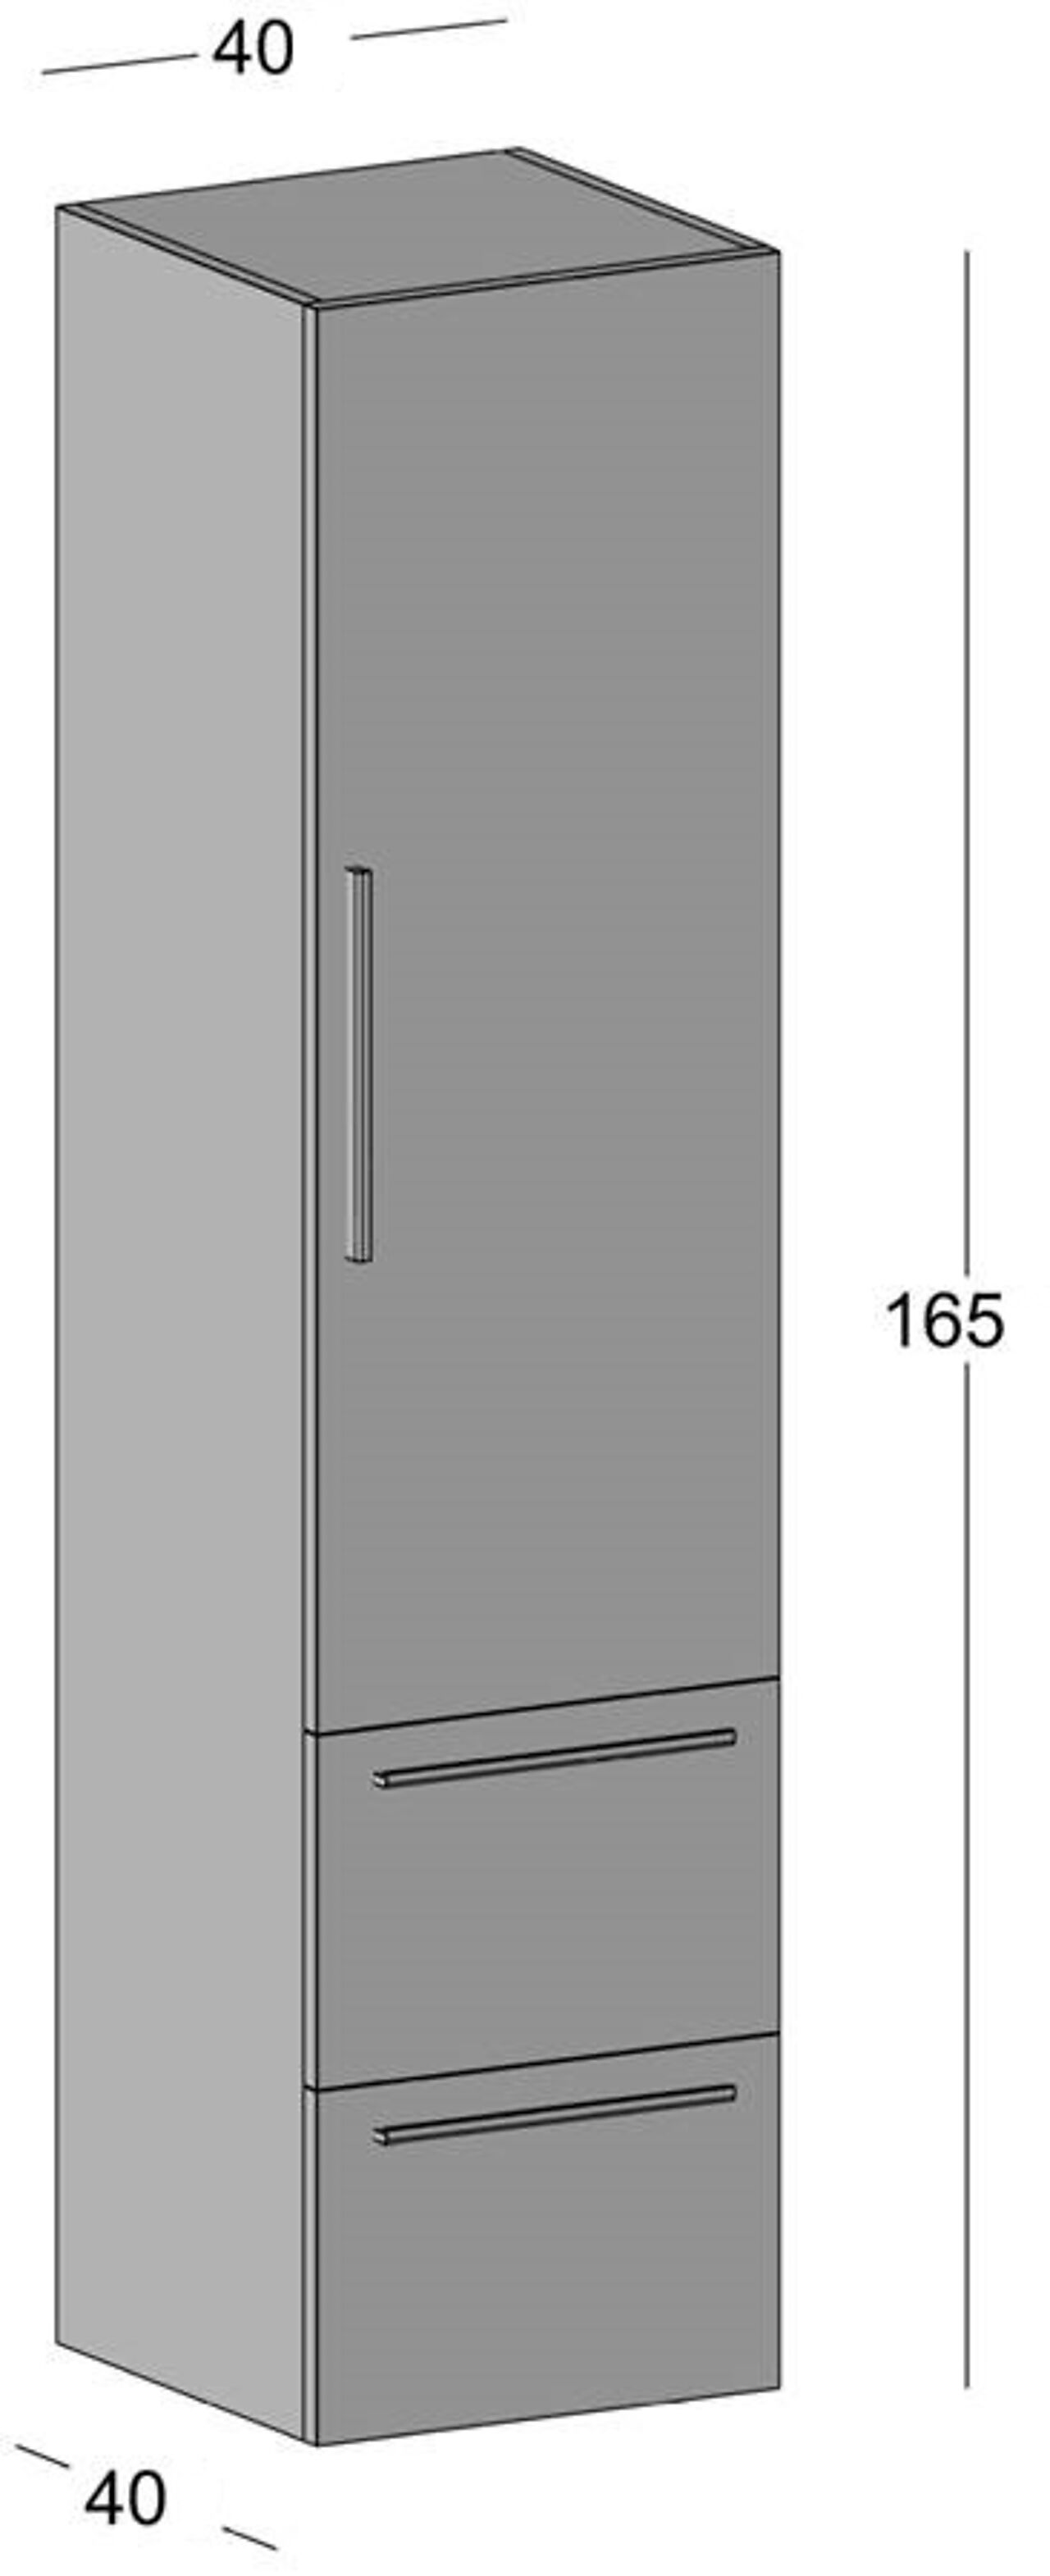 Alterna Alterna Malin 40 cm høyskap med 1 dør og 2 skuffer grå matt 1